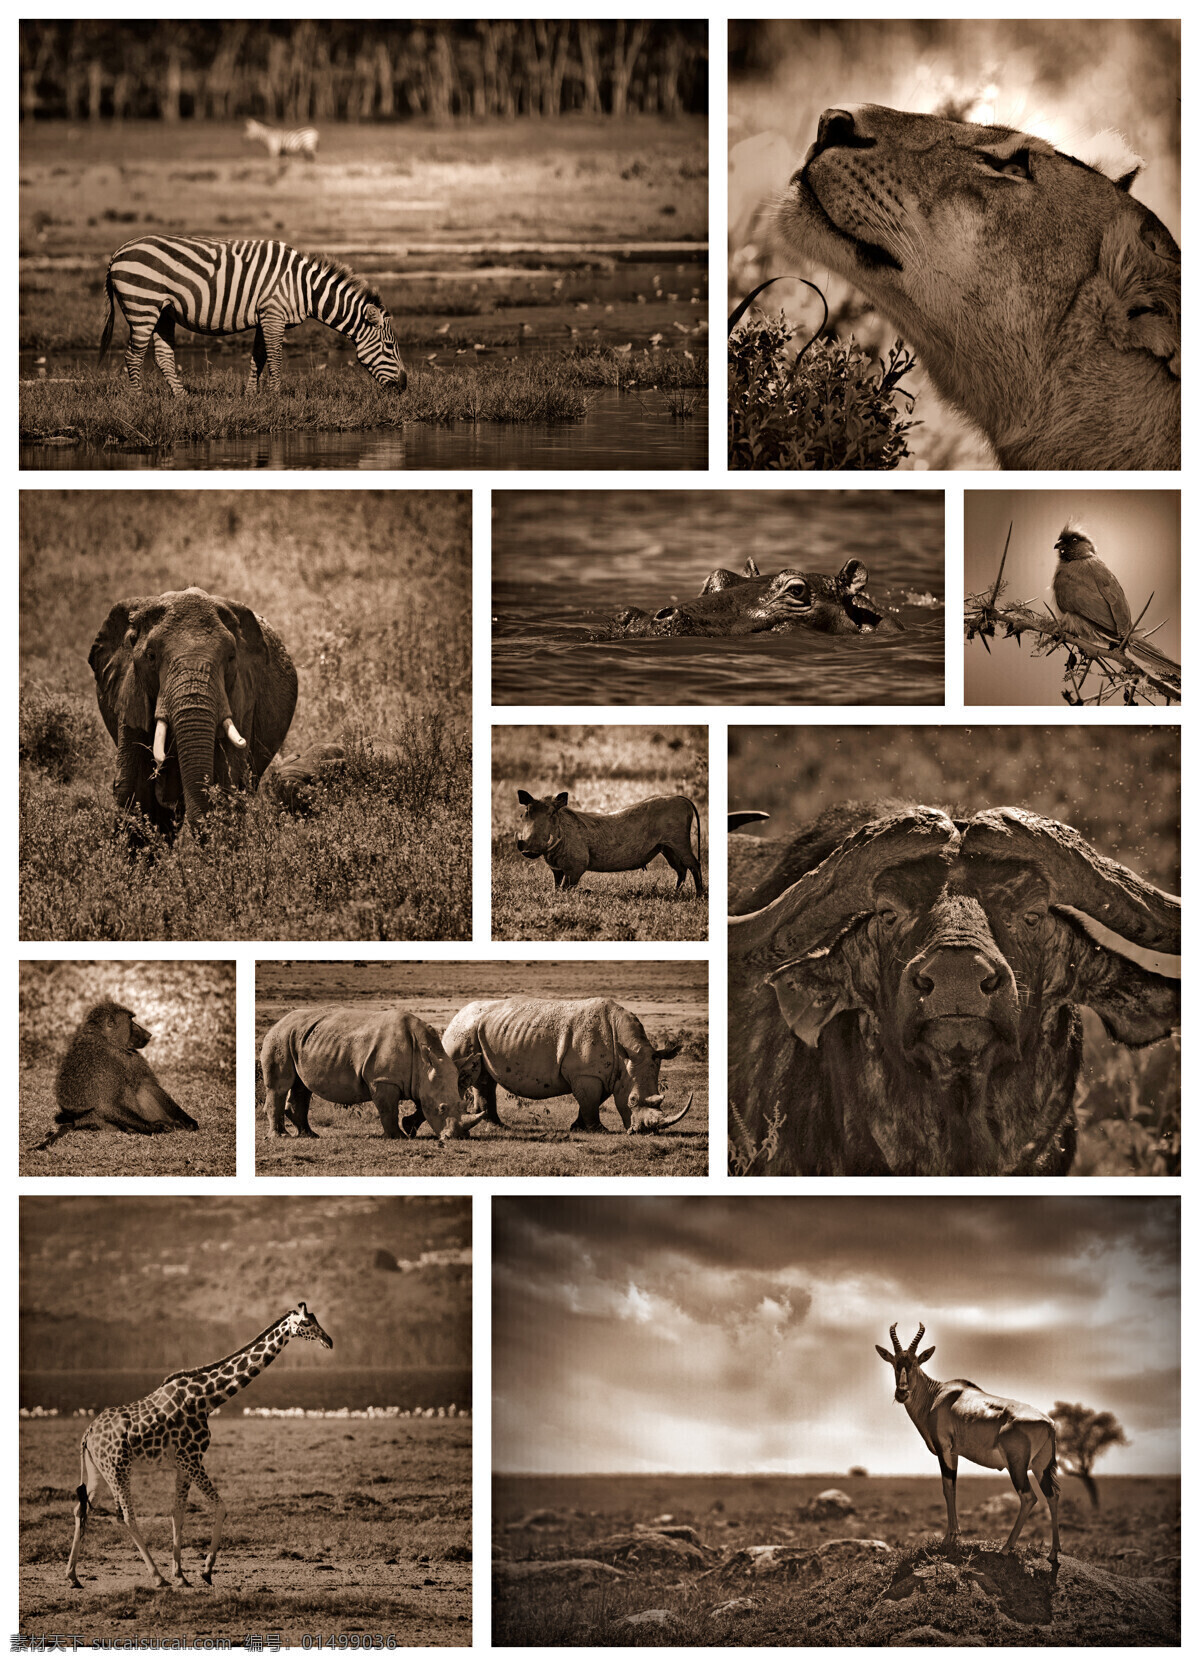 非洲 动物 黑白 照片 斑马 狮子 大象 狒狒 长颈鹿 犀牛 非洲动物 水牛 野生动物 动物摄影 动物世界 陆地动物 生物世界